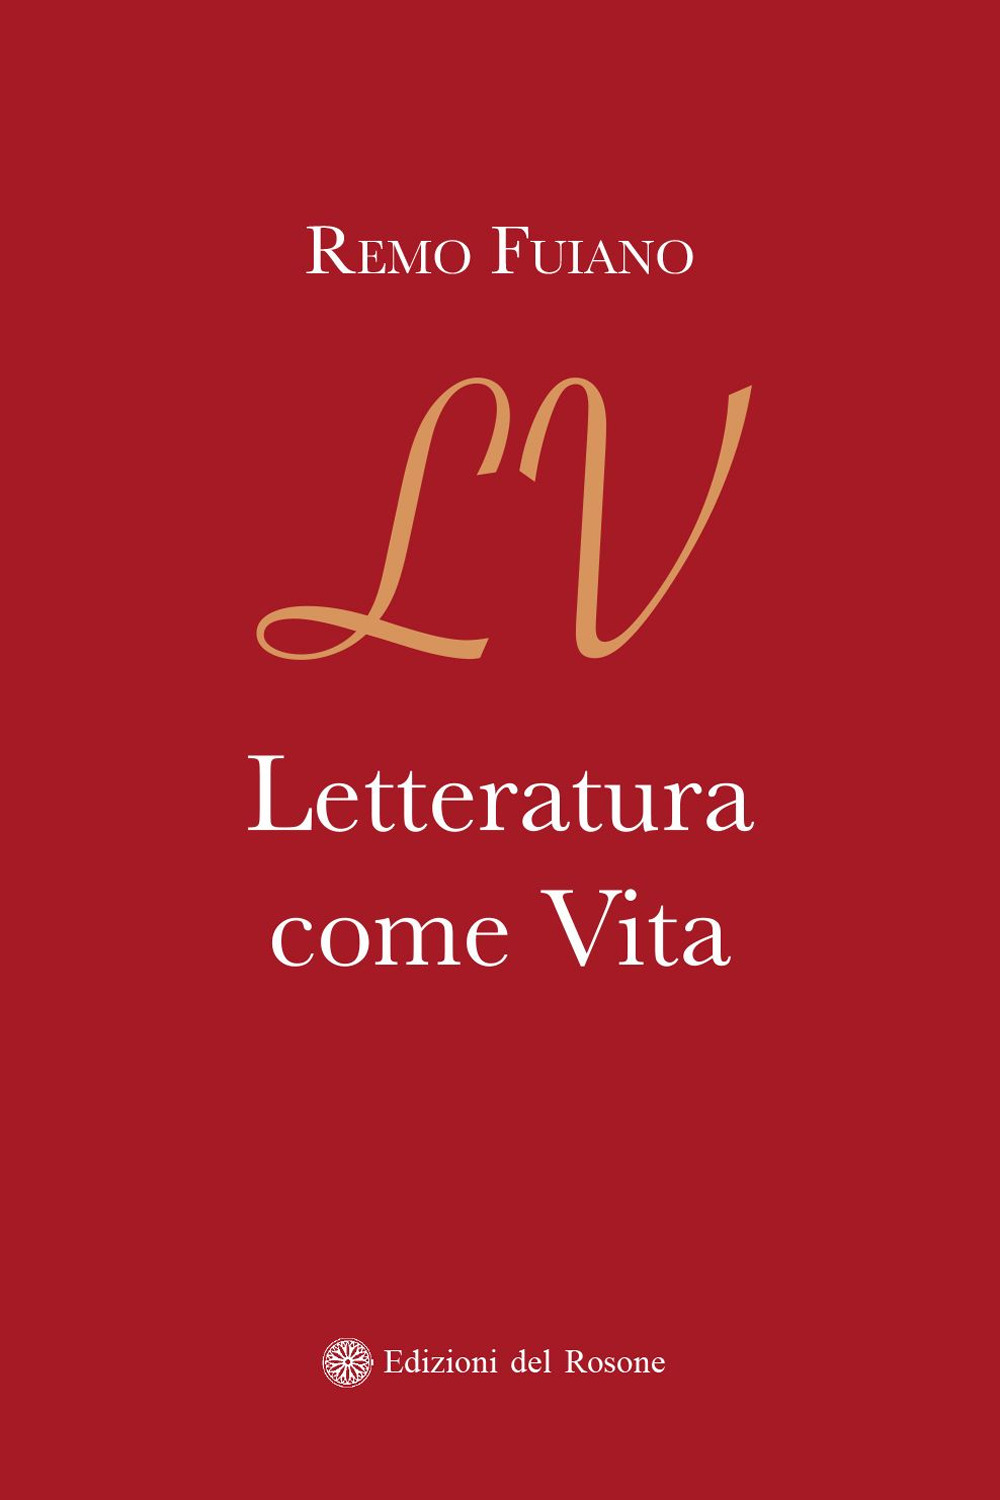 Image of Letteratura come vita